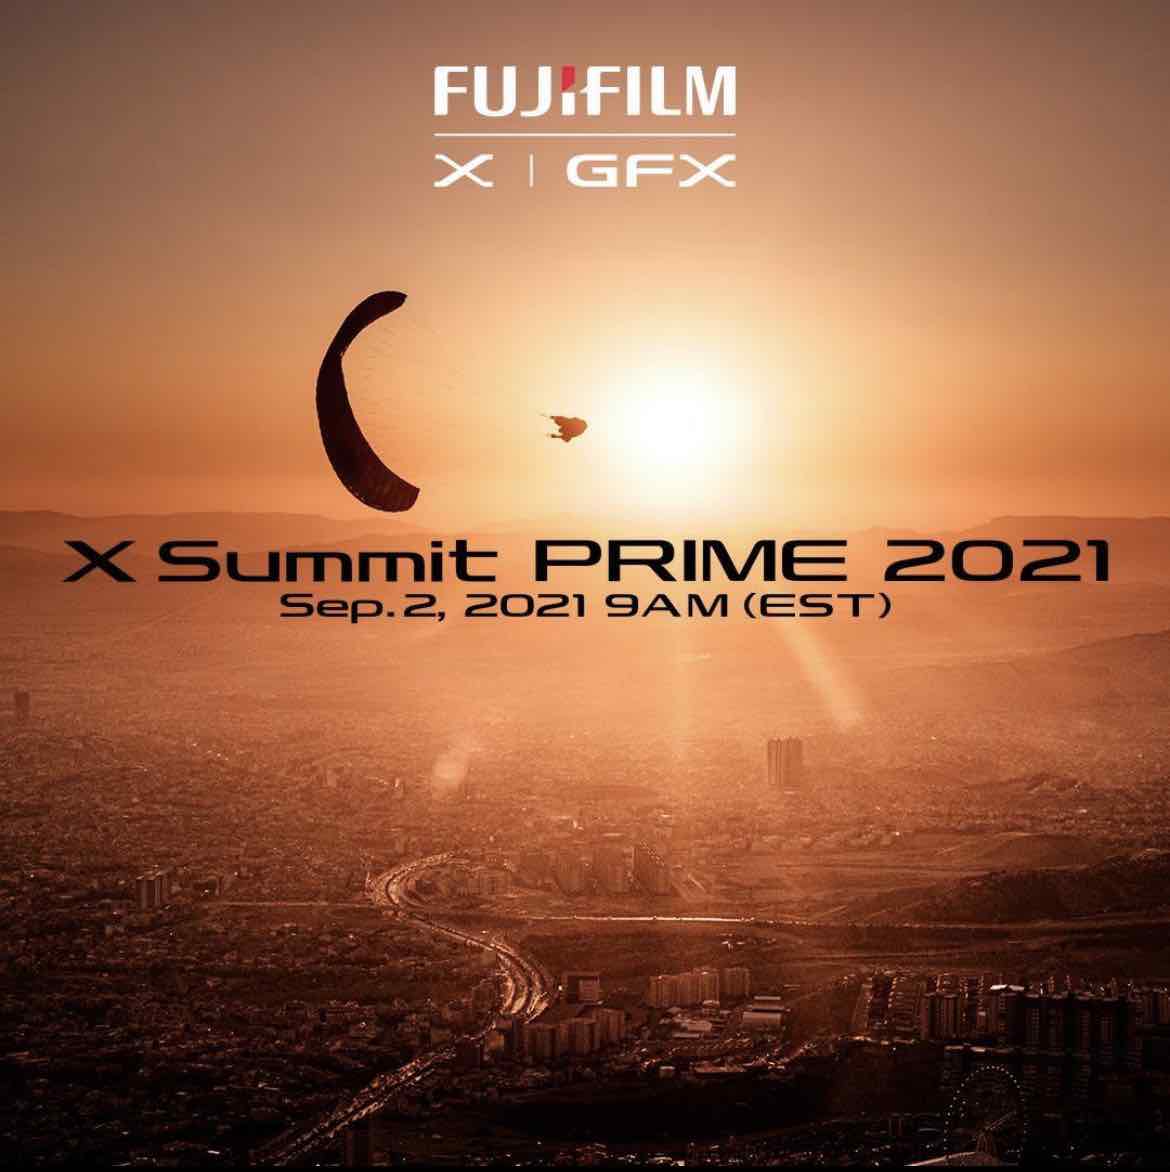 Sự kiện Fujifilm X Summit Prime 2021 sẽ diễn ra vào lúc 20:00 ngày 2/9 sắp tới